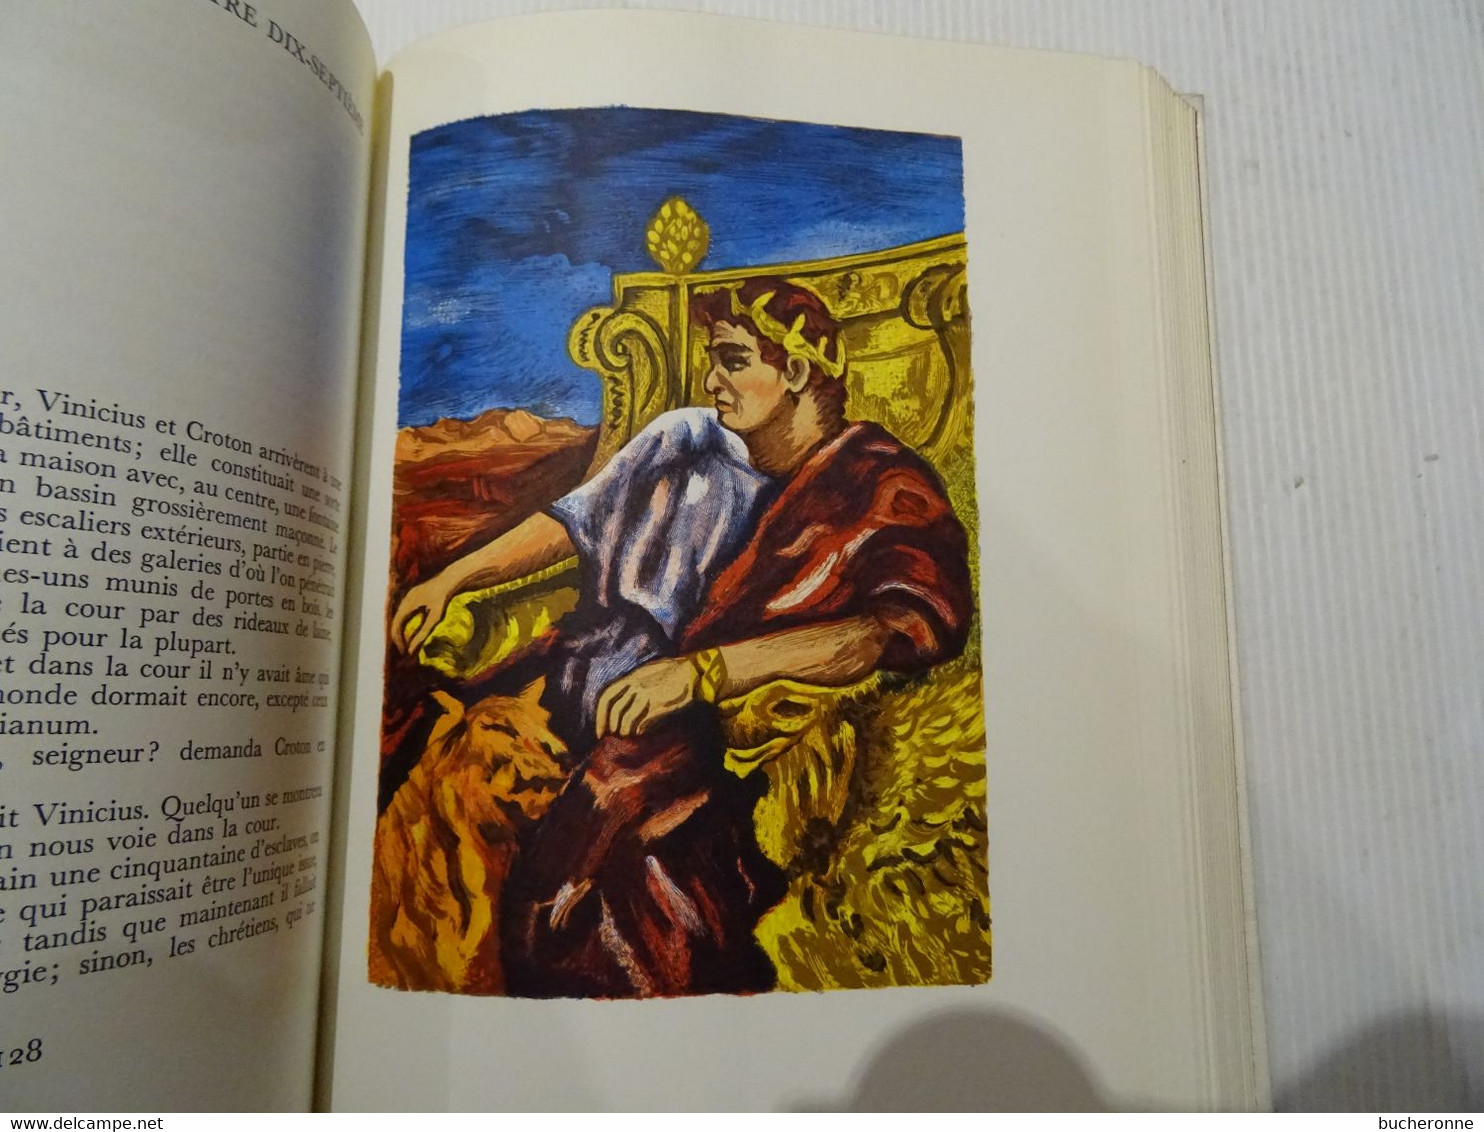 Prix Nobel de littérature, 1905, quo vadis, Henryk Sienkiewicz couverture dessin de picasso 290 pages dédicasse & dessin